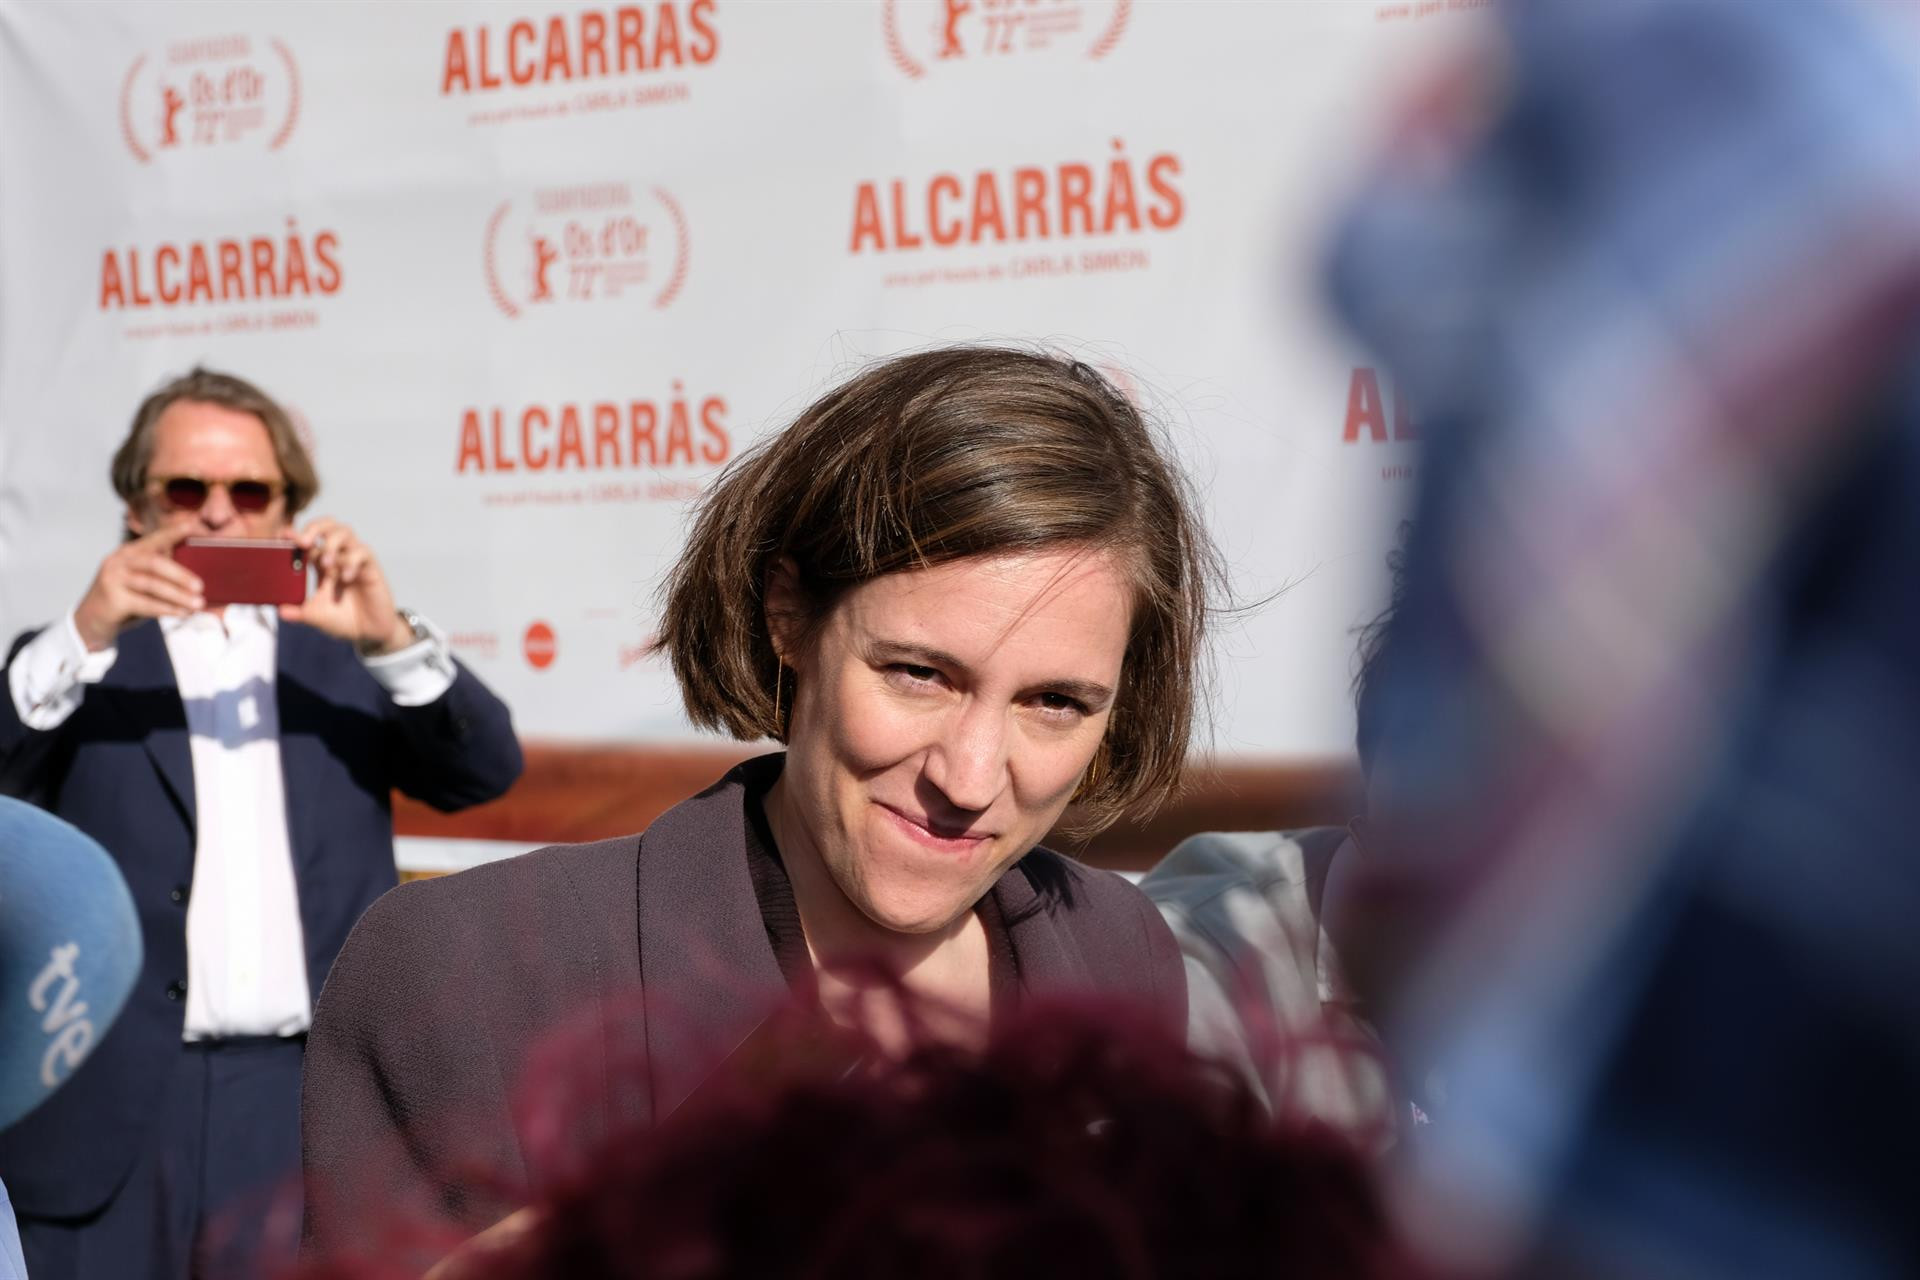 La directora Carla Simón / EP